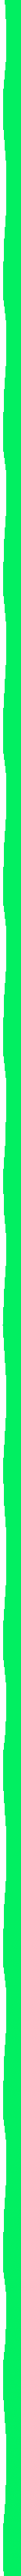 green boarder